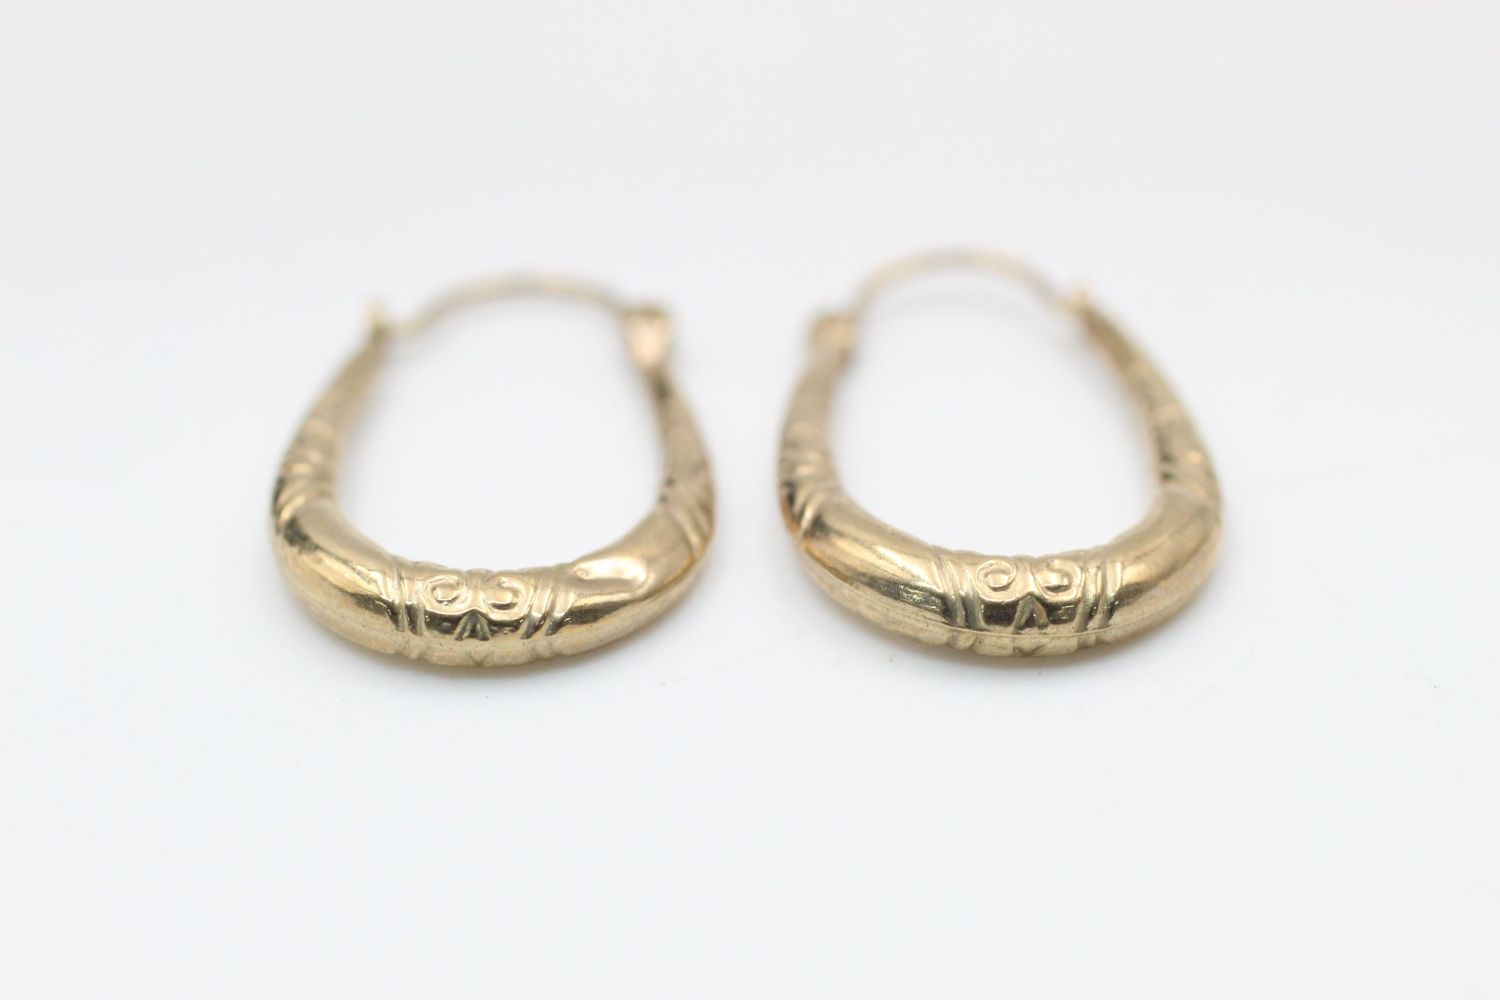 2 x 9ct Gold hoop earrings inc. engraved 1.9 grams gross - Image 6 of 7